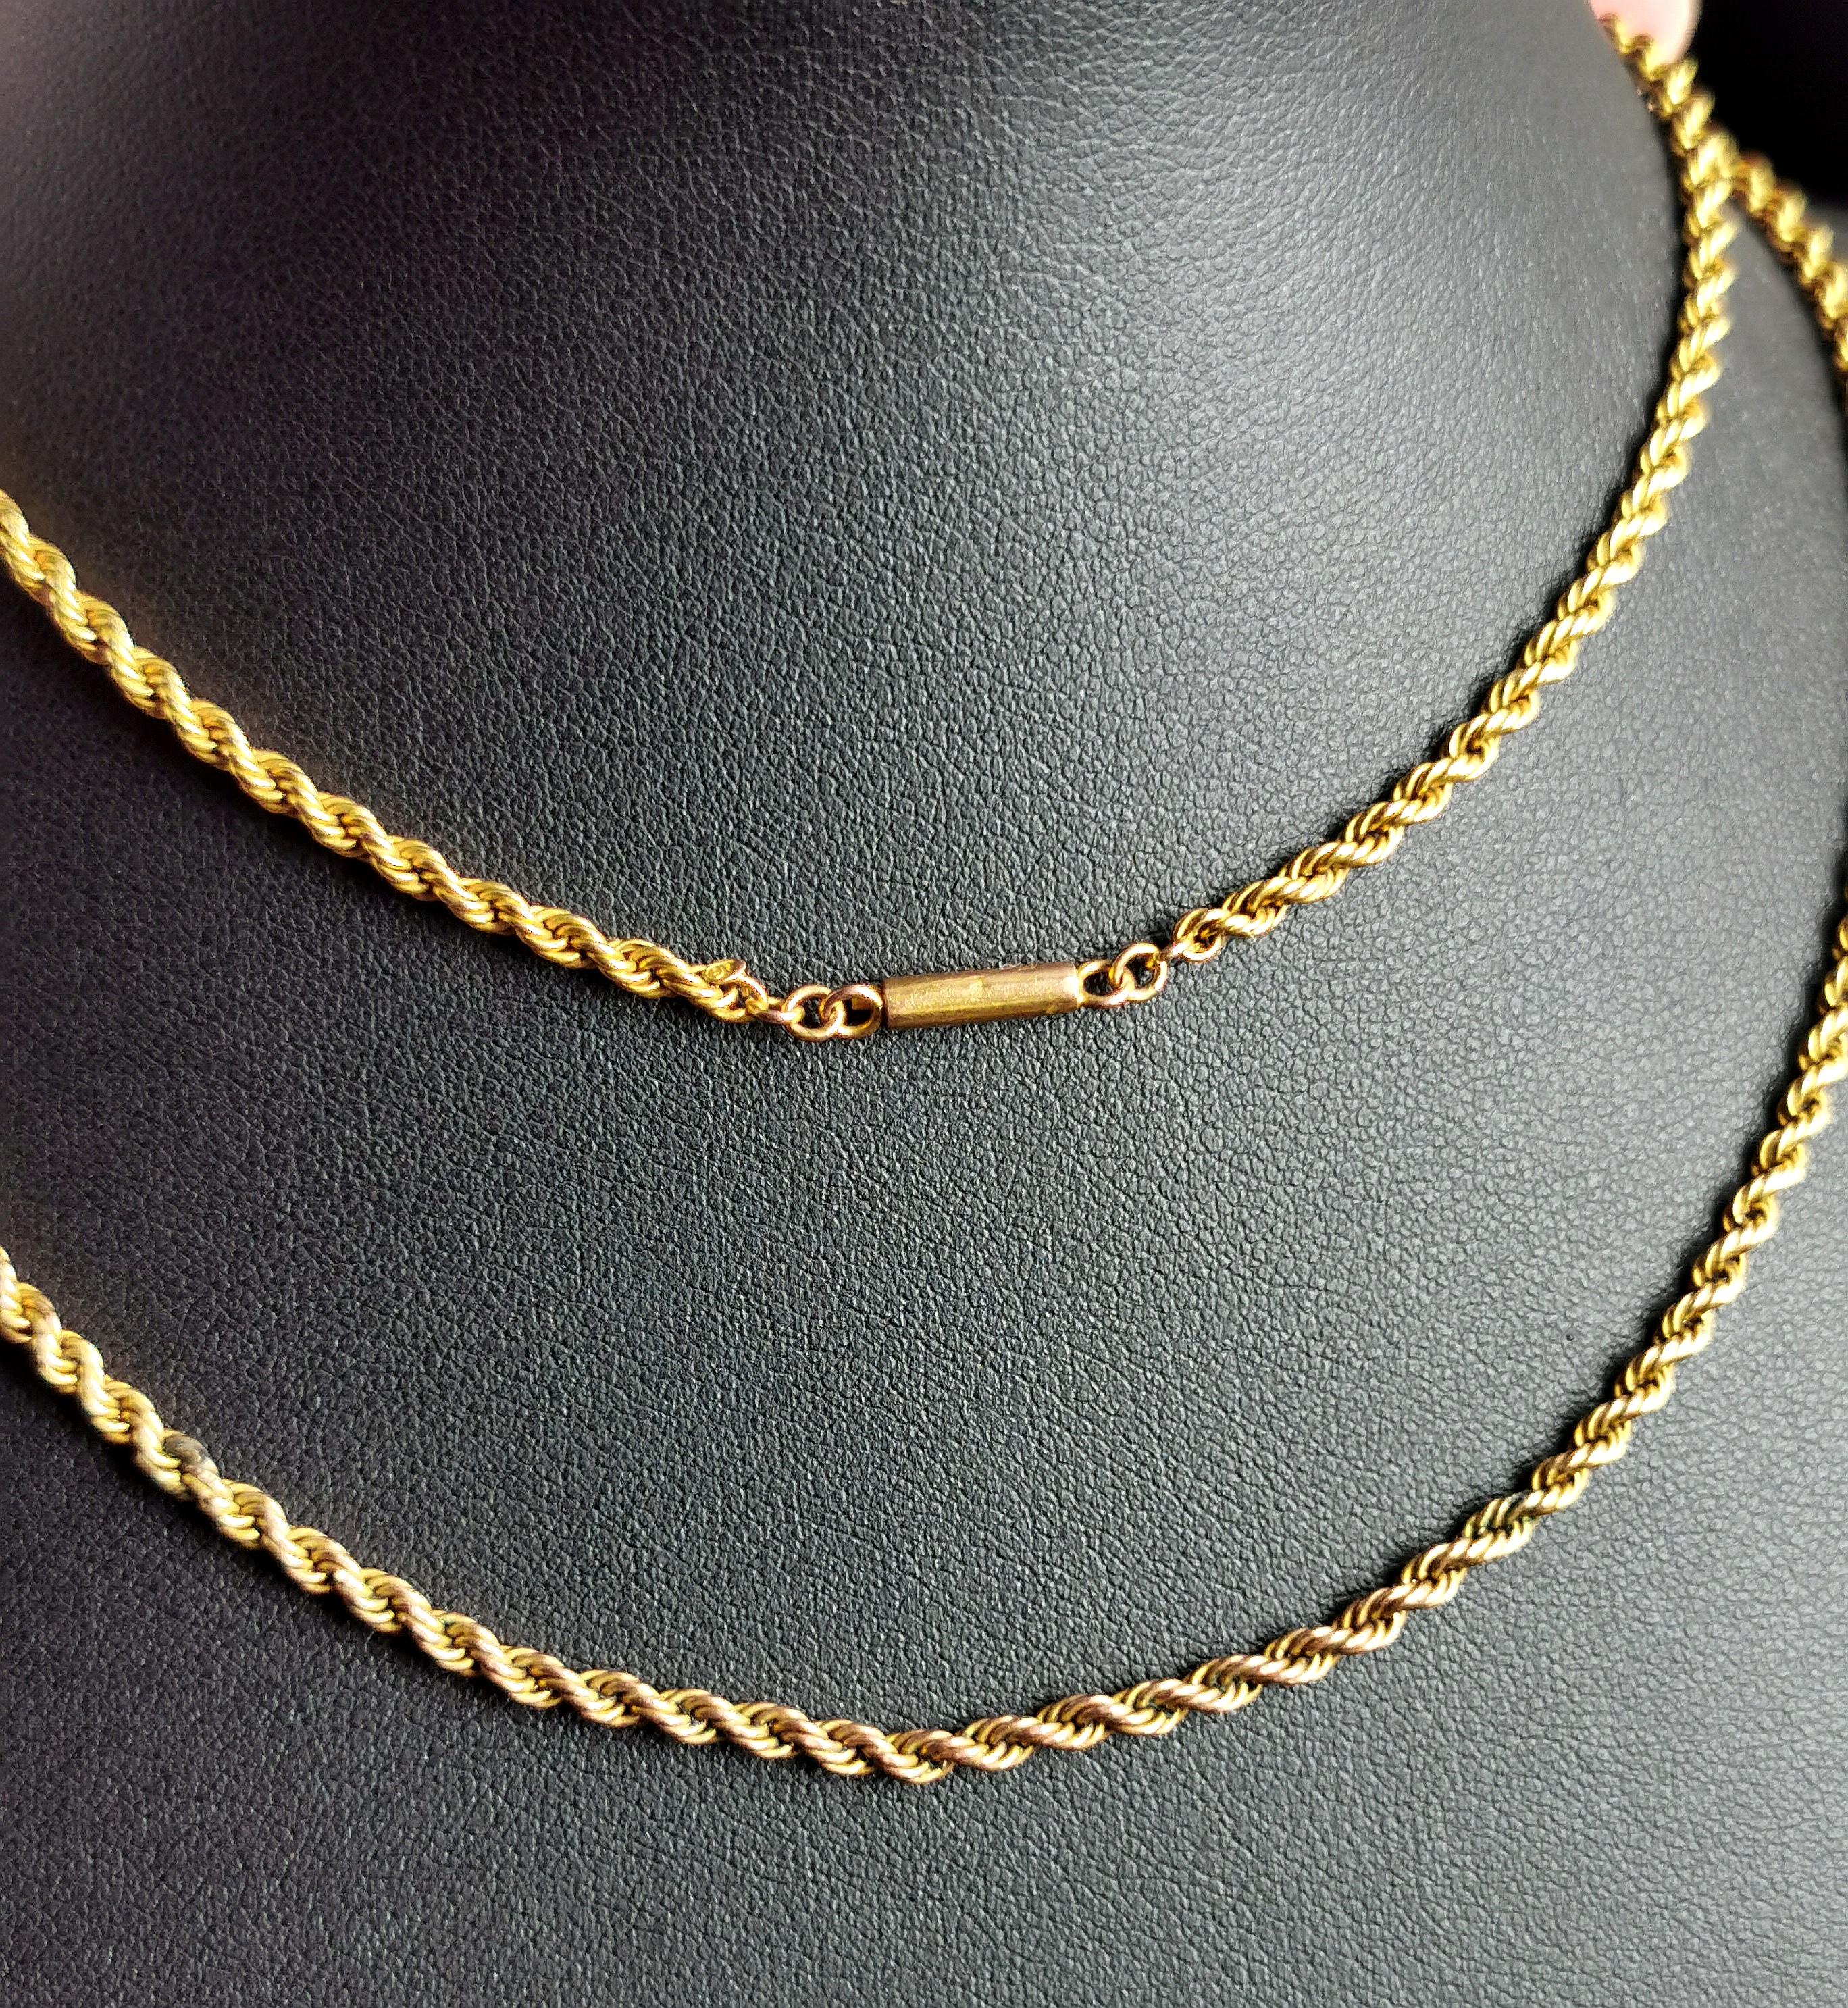 Eine wunderschöne antike, edwardianische Ära 9kt Gold Seil Kette Halskette.

Rope Twist Glieder in einem reichen geblümten 9kt Gold mit einer schönen tragbaren Länge.

Diese schöne Kette eignet sich perfekt zum Schichten und wird mit einem